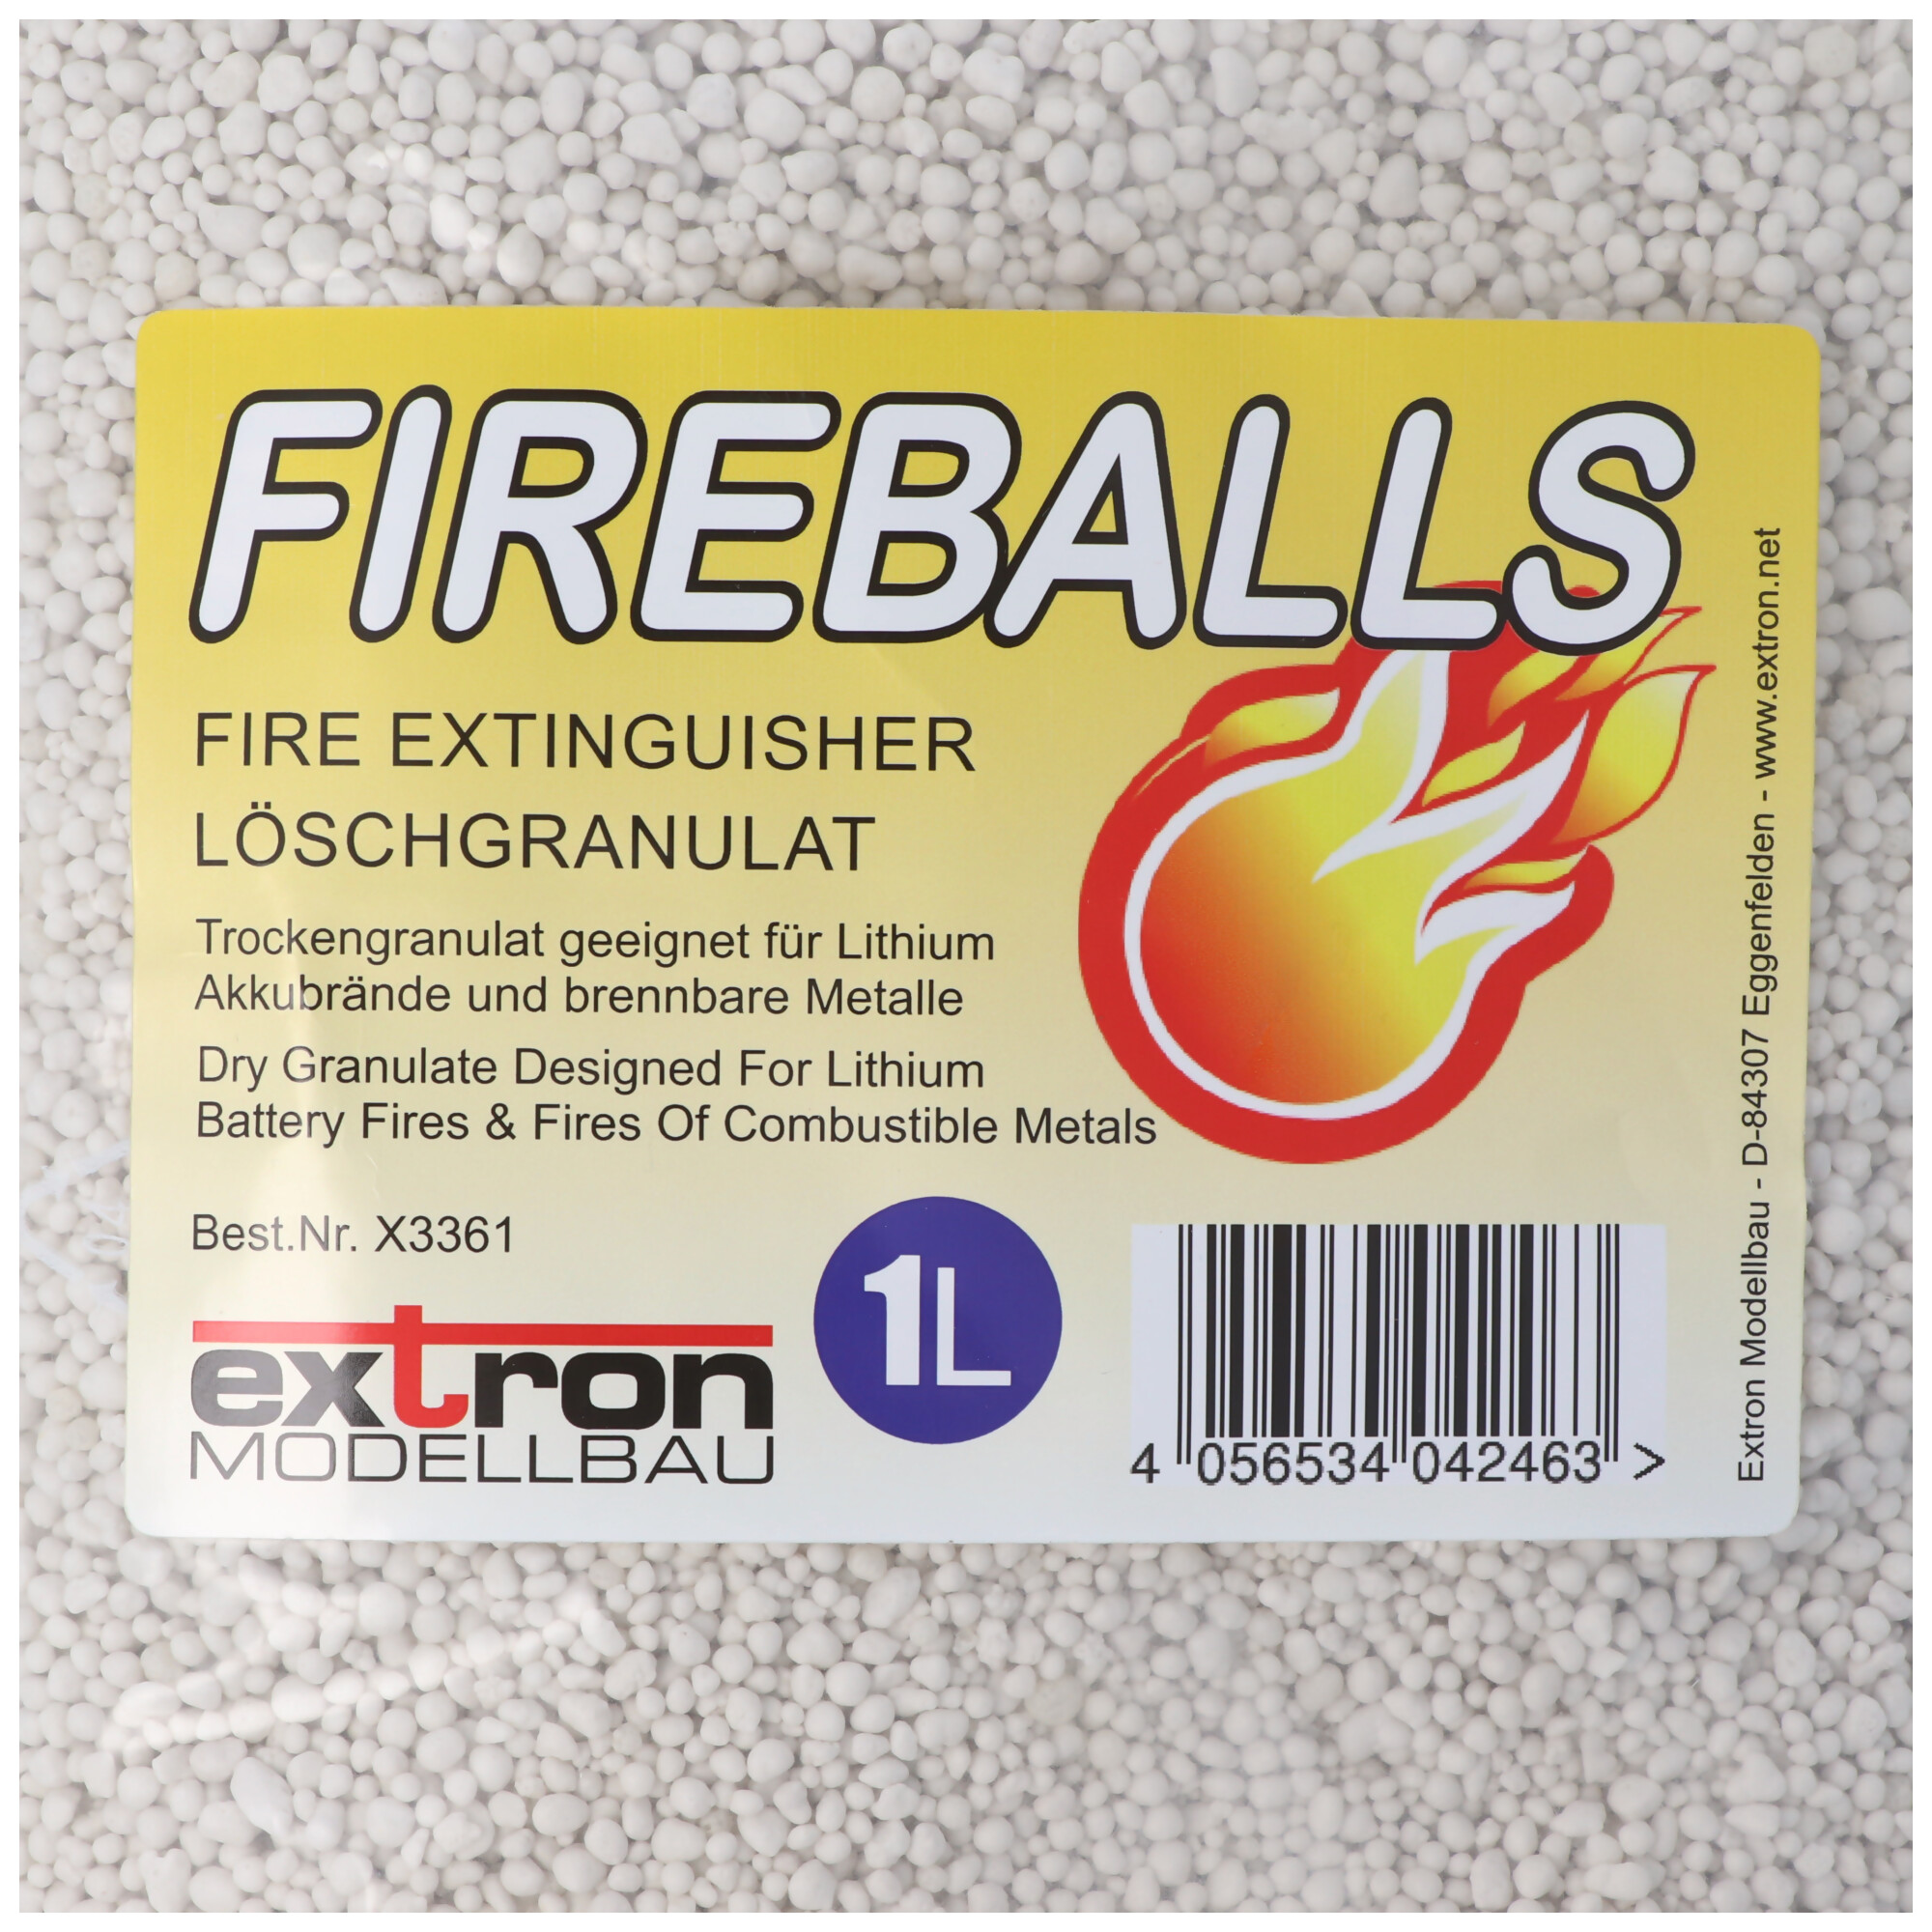 Fireballs Feuerlöschgranulat für Li-ion Lithium Akkus, Brandschutz, Löschmittel 1 Liter